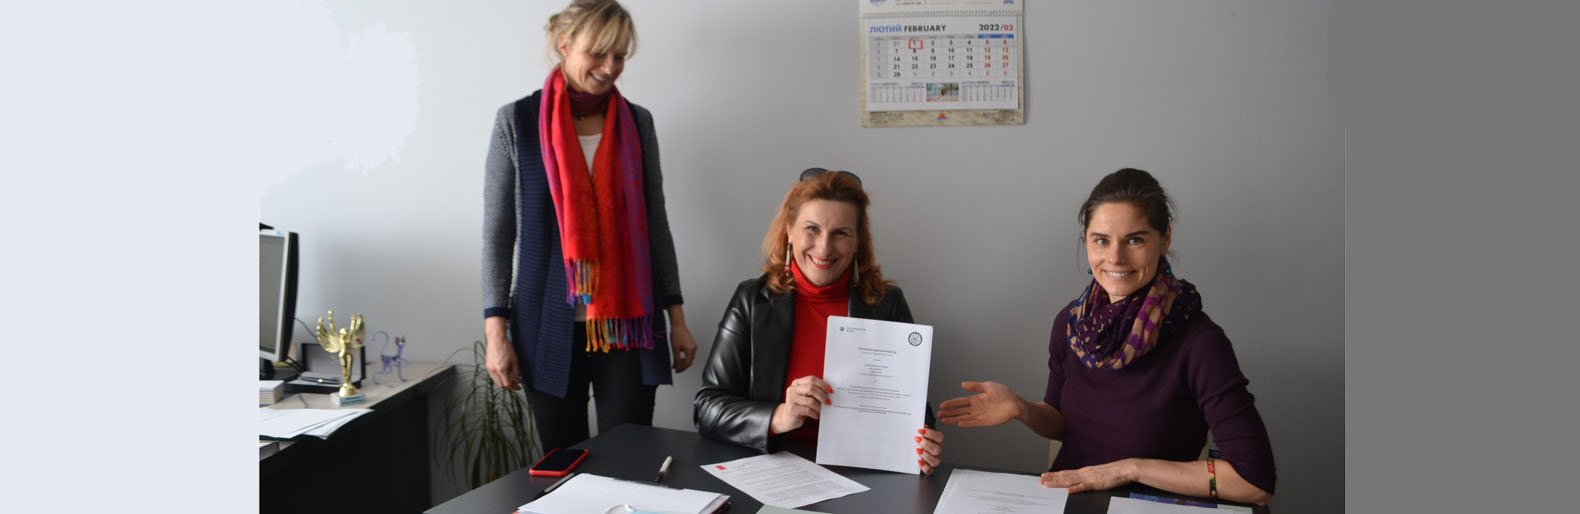 Тернопільське училище підписало угоду про співпрацю з Ремісничою палатою Дрездена